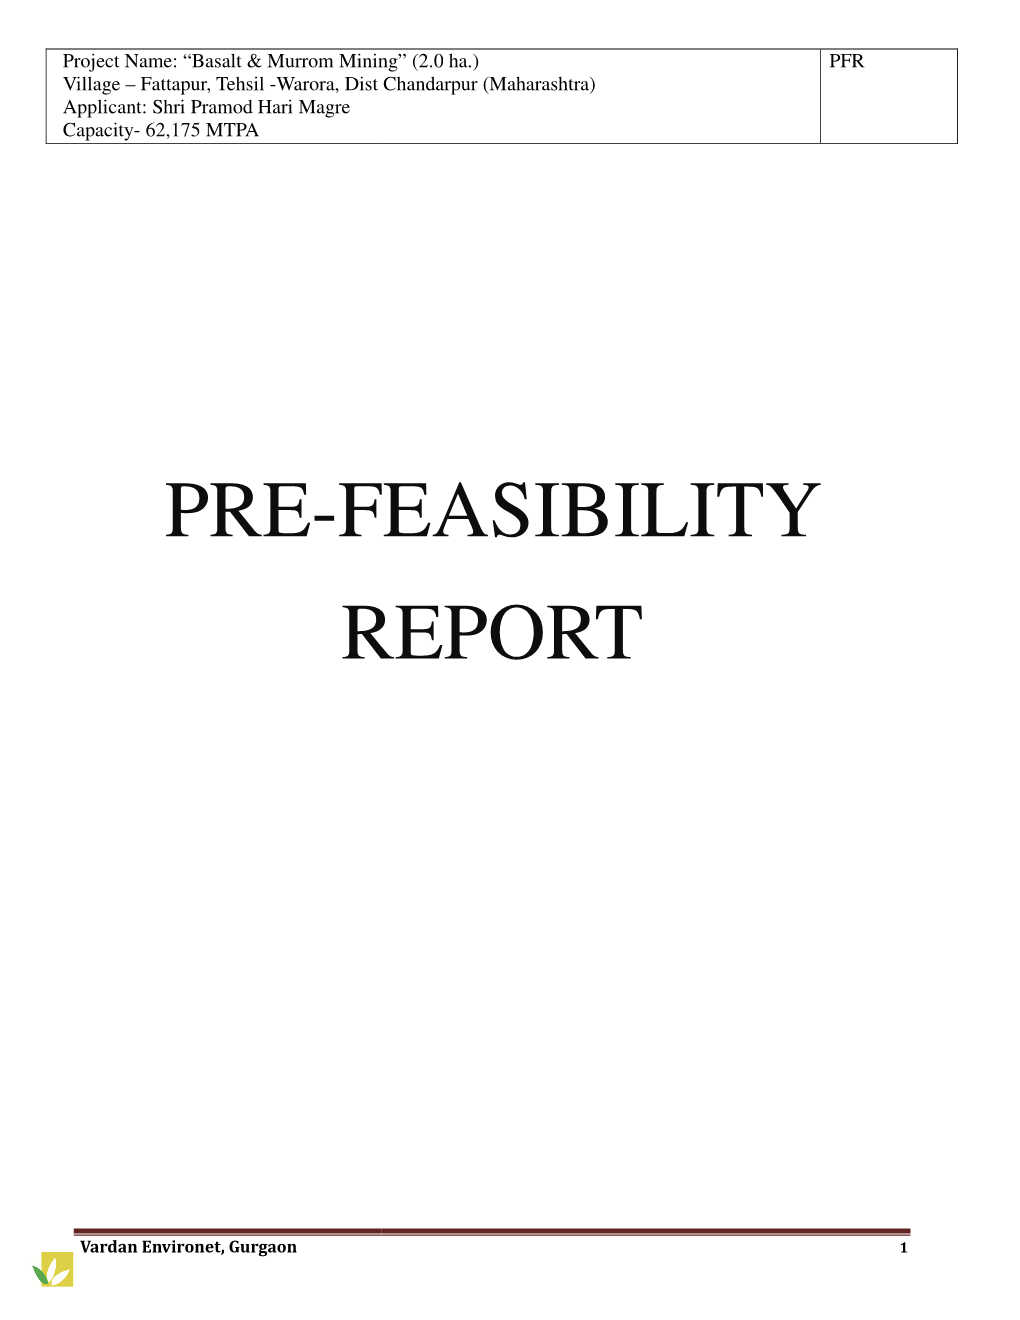 Pre-Feasibility Report Feasibility Report Easibility